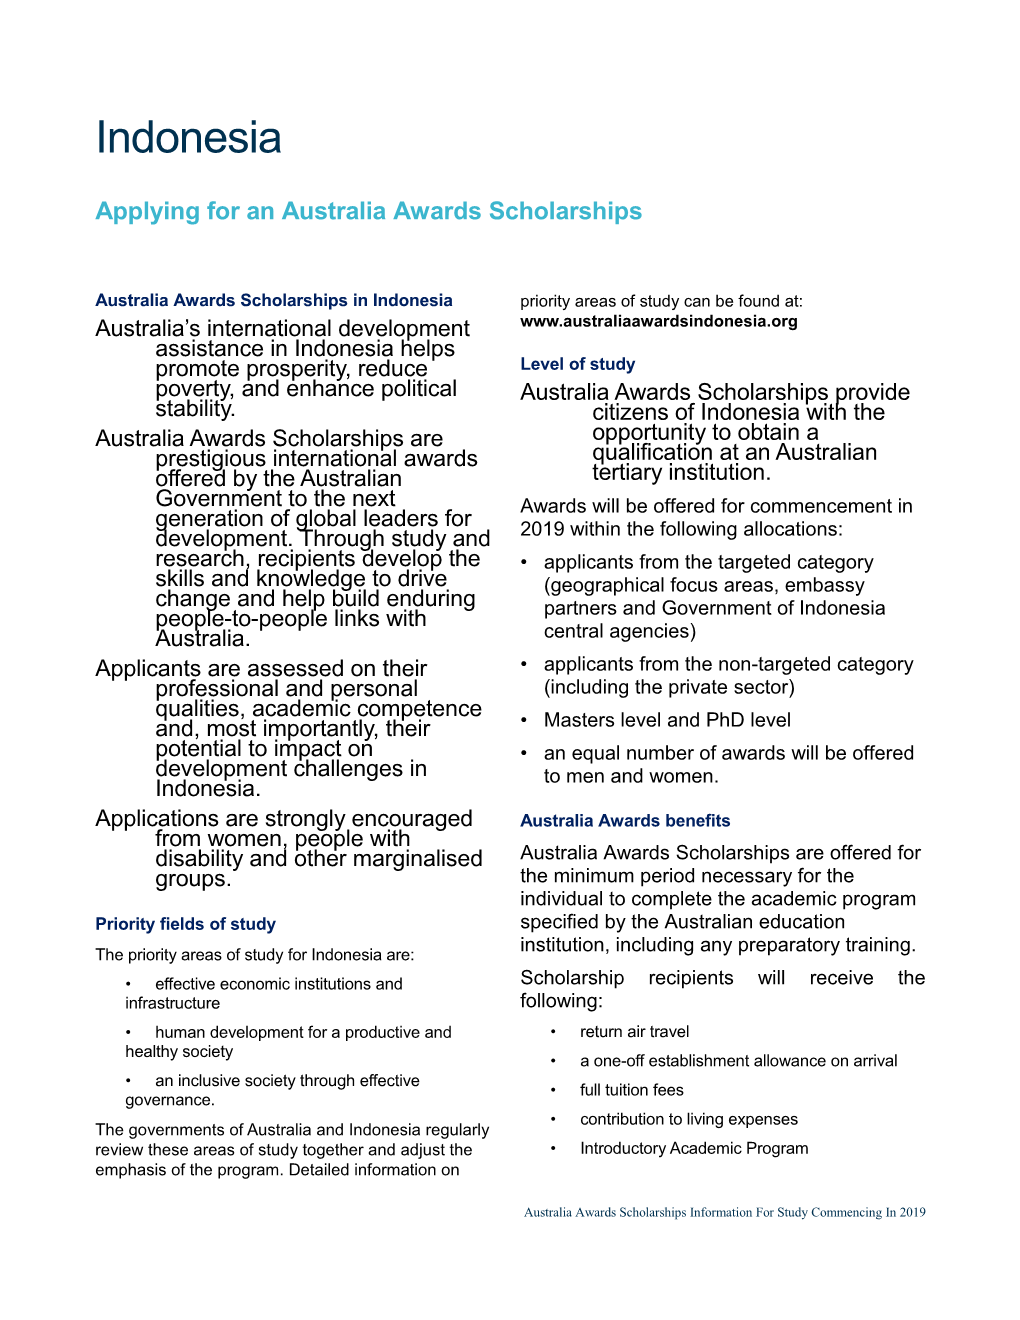 Applying for an Australia Awards Scholarships